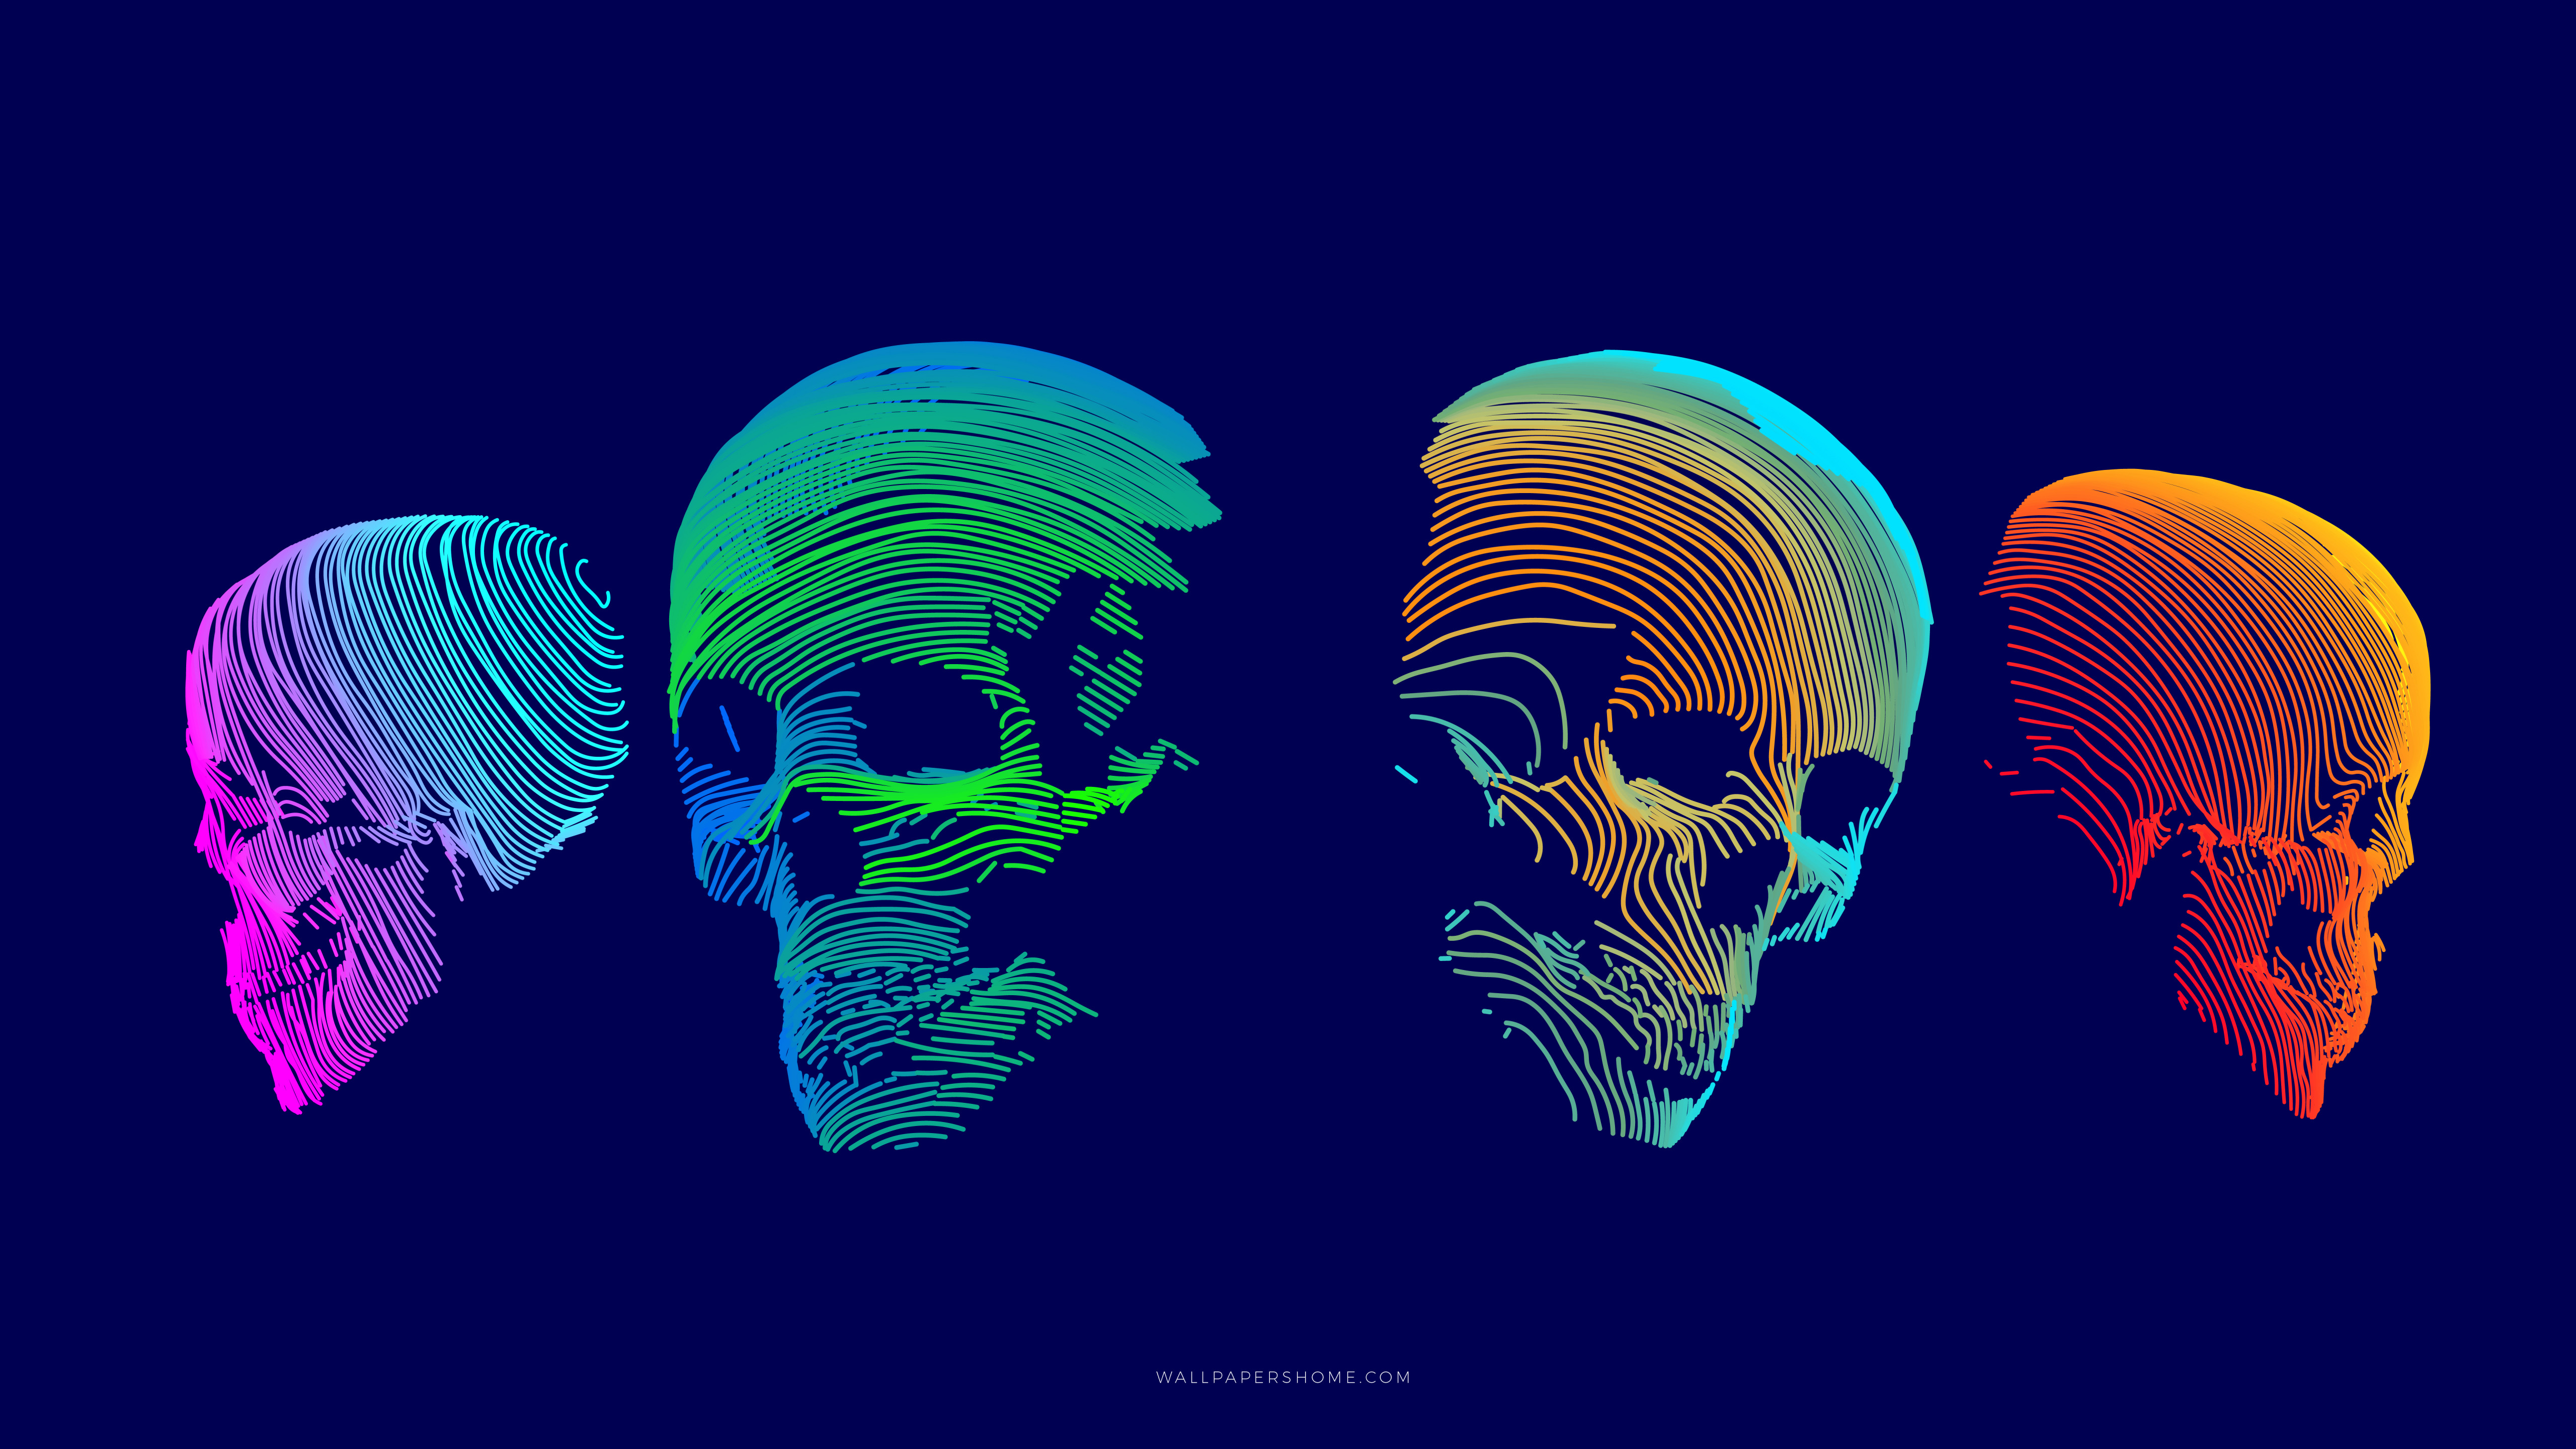 Wallpaper abstract, 3D, colorful, skull, 8k, Abstract #21283 3d Skull Wallpaper Hd